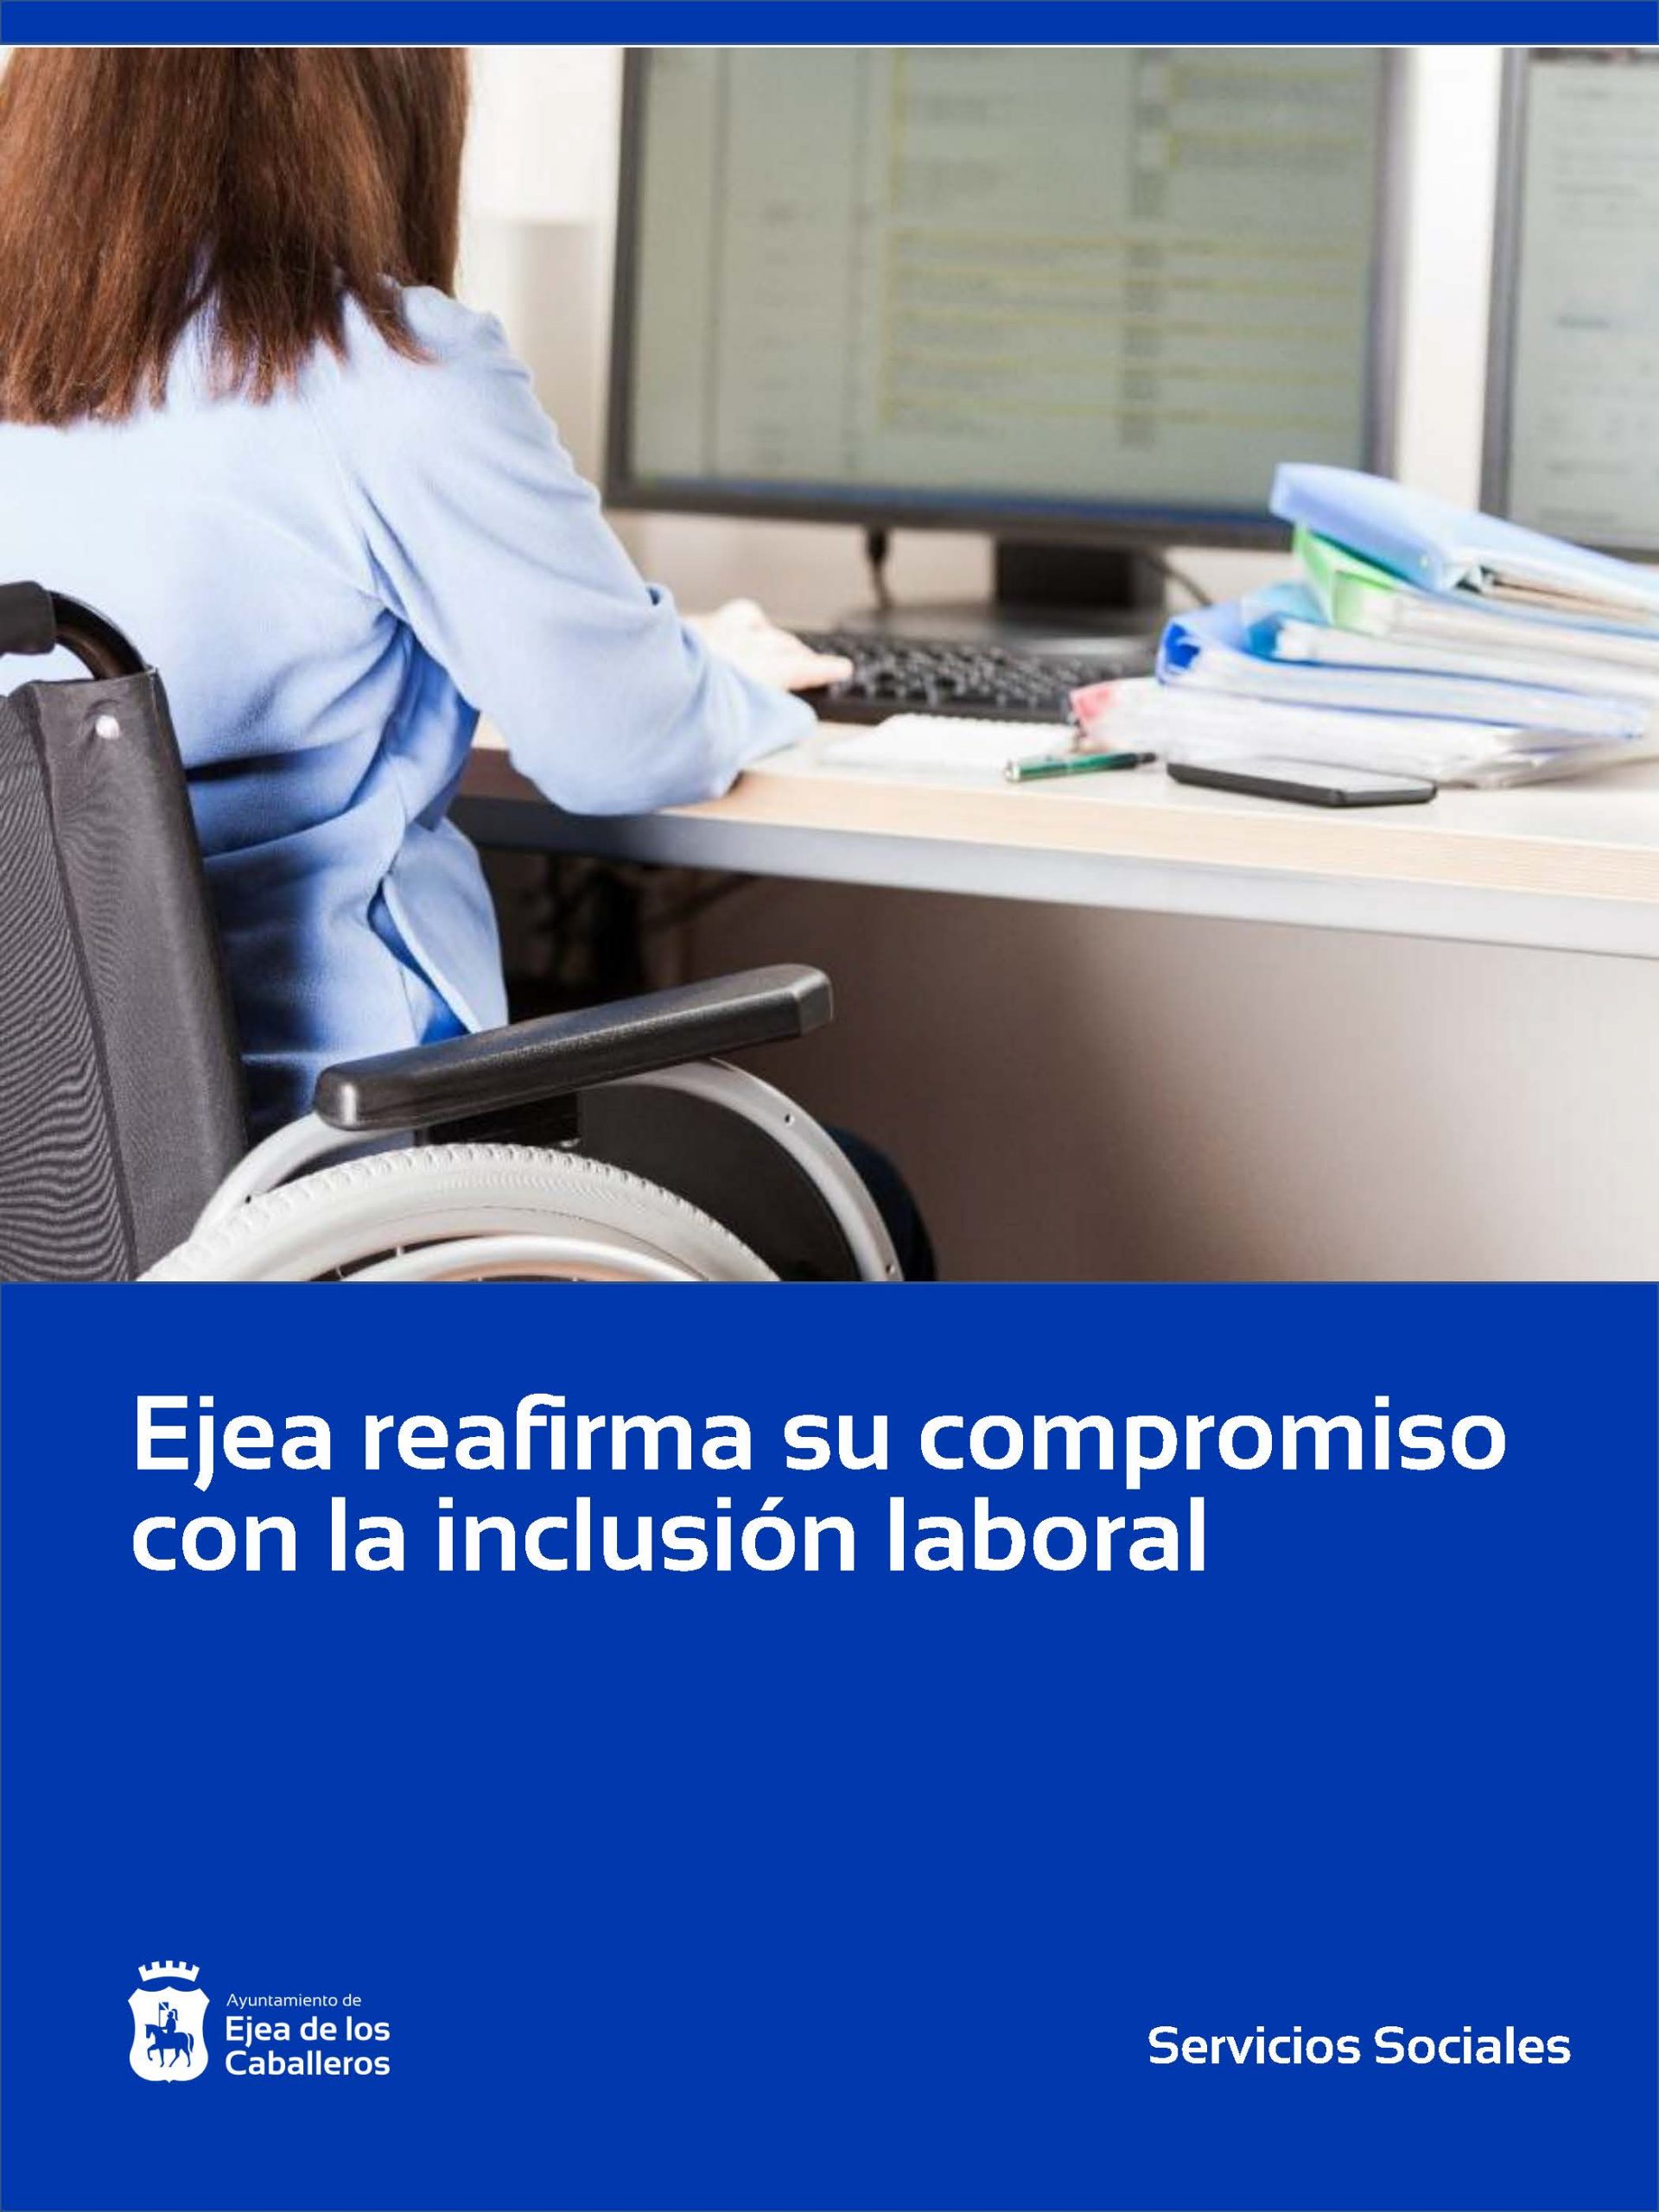 En este momento estás viendo Ejea reafirma su compromiso con la inclusión laboral de las personas con discapacidad